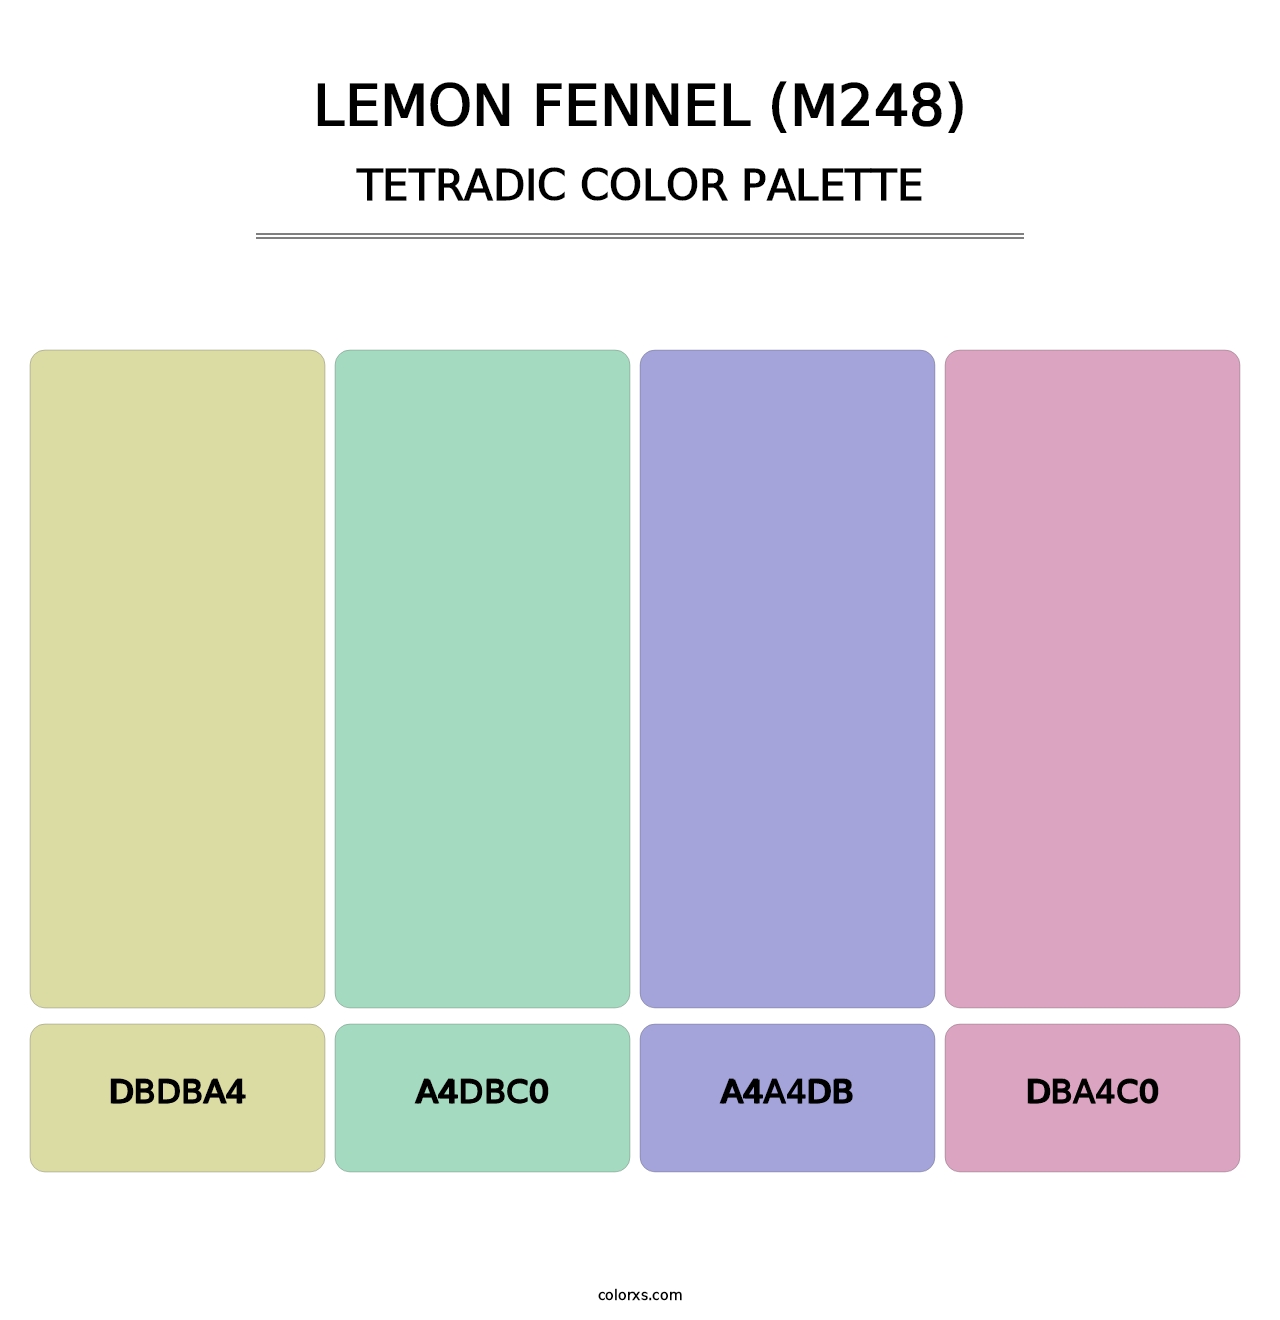 Lemon Fennel (M248) - Tetradic Color Palette